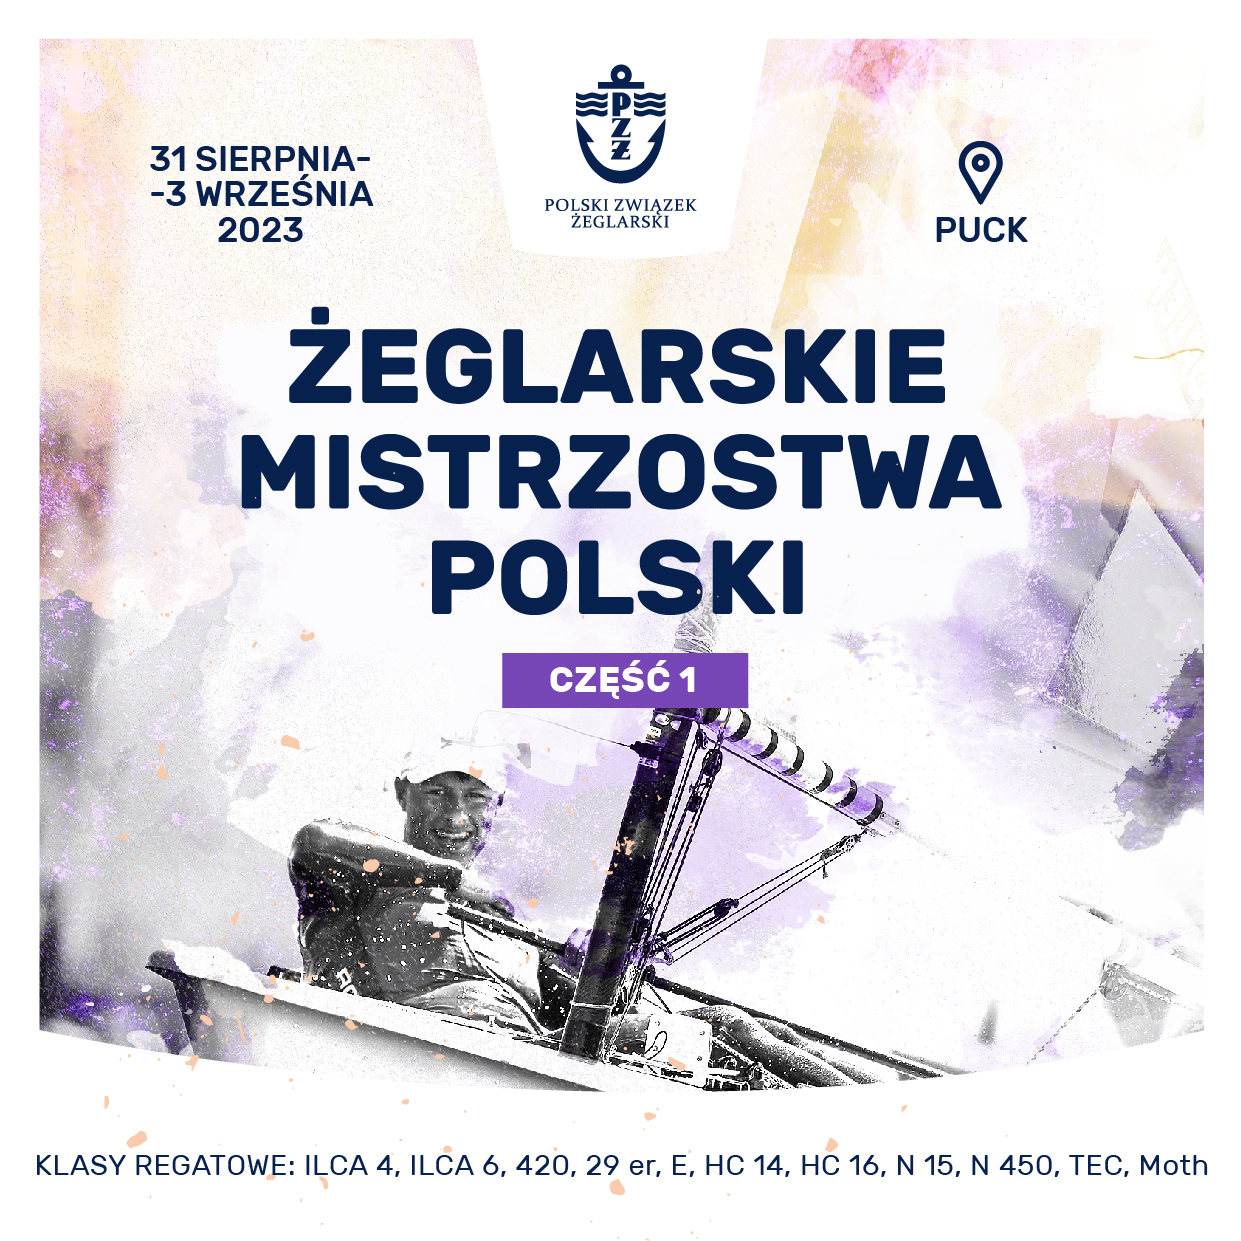 Mistrzostwa Polski 2023 cz. 1 (klas nieolimpijskich)